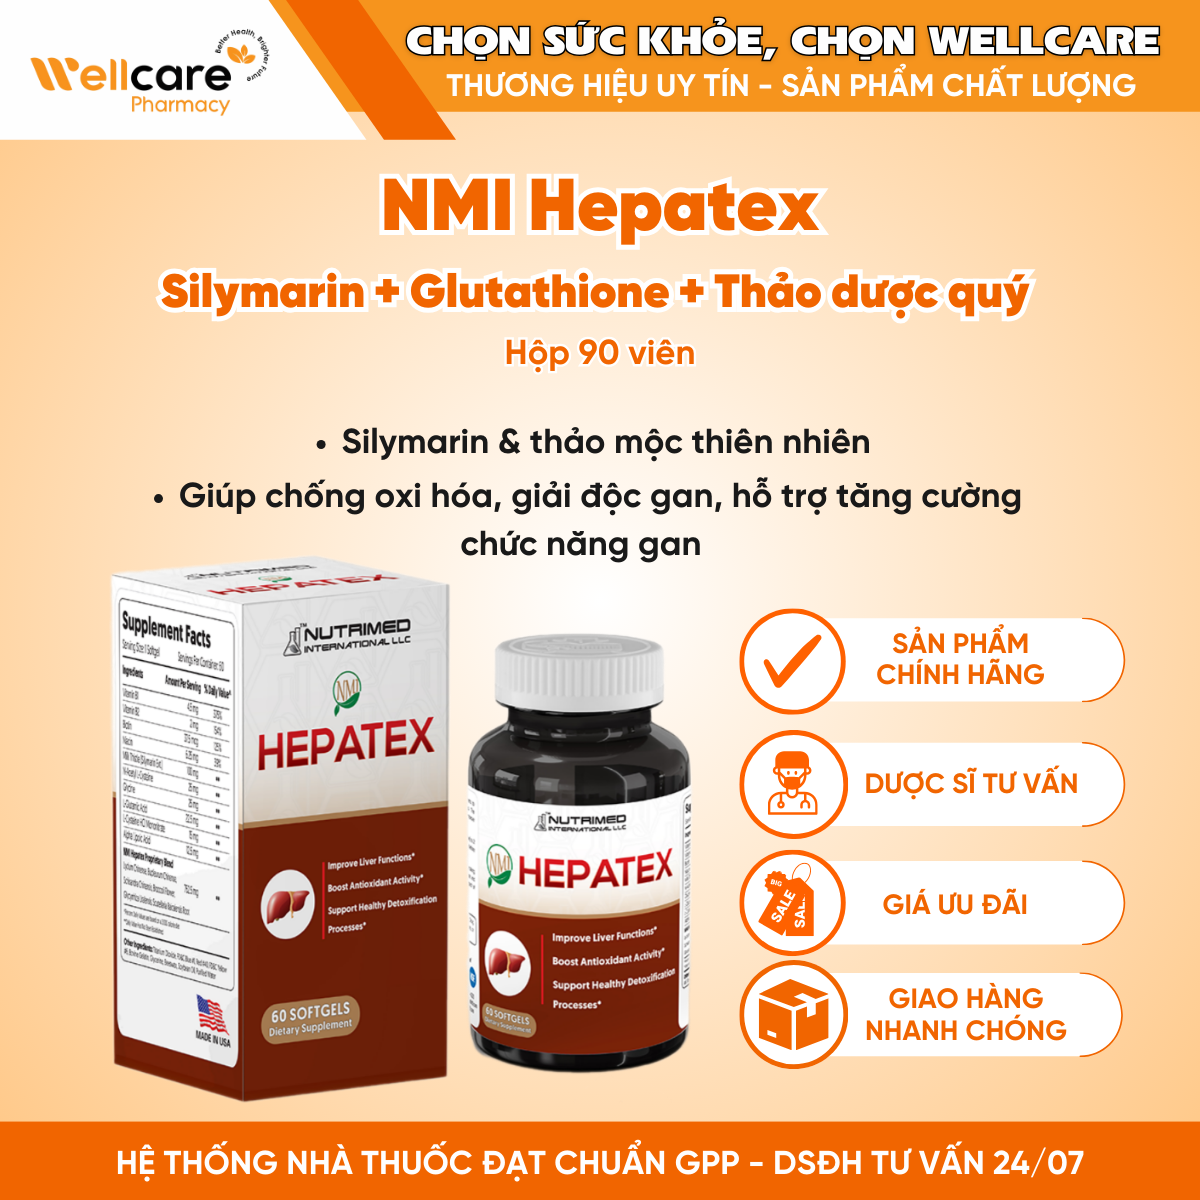 NMI Hepatex – Viên uống hỗ trợ tăng cường chức năng gan (Hộp 90 viên)